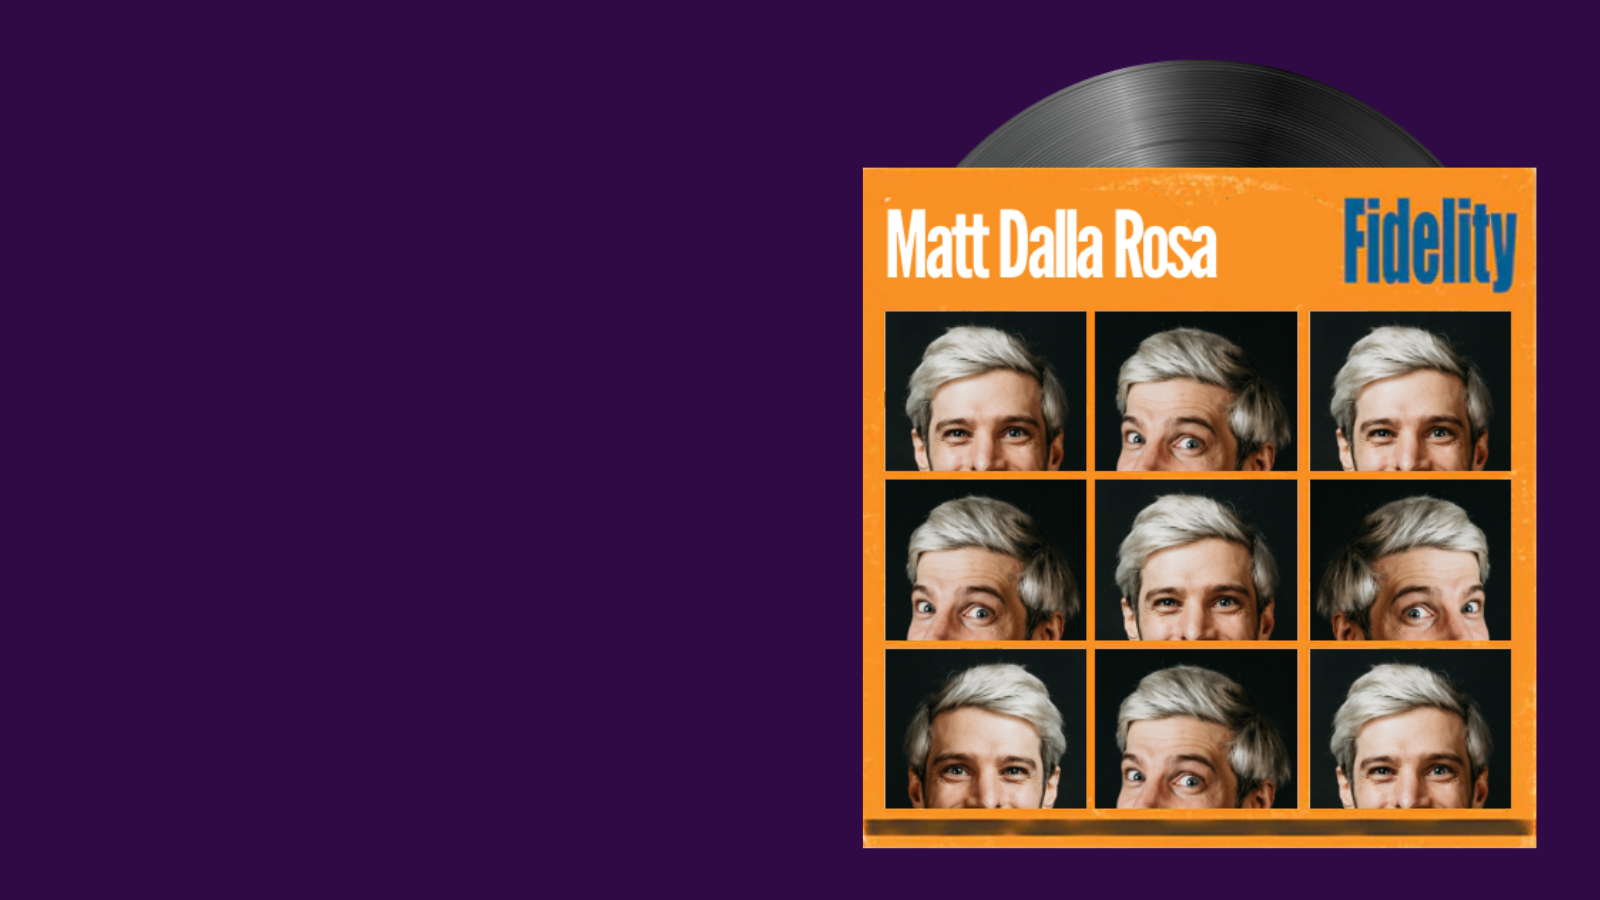 High fidelity image showing Matt Della Rossa on a record cover